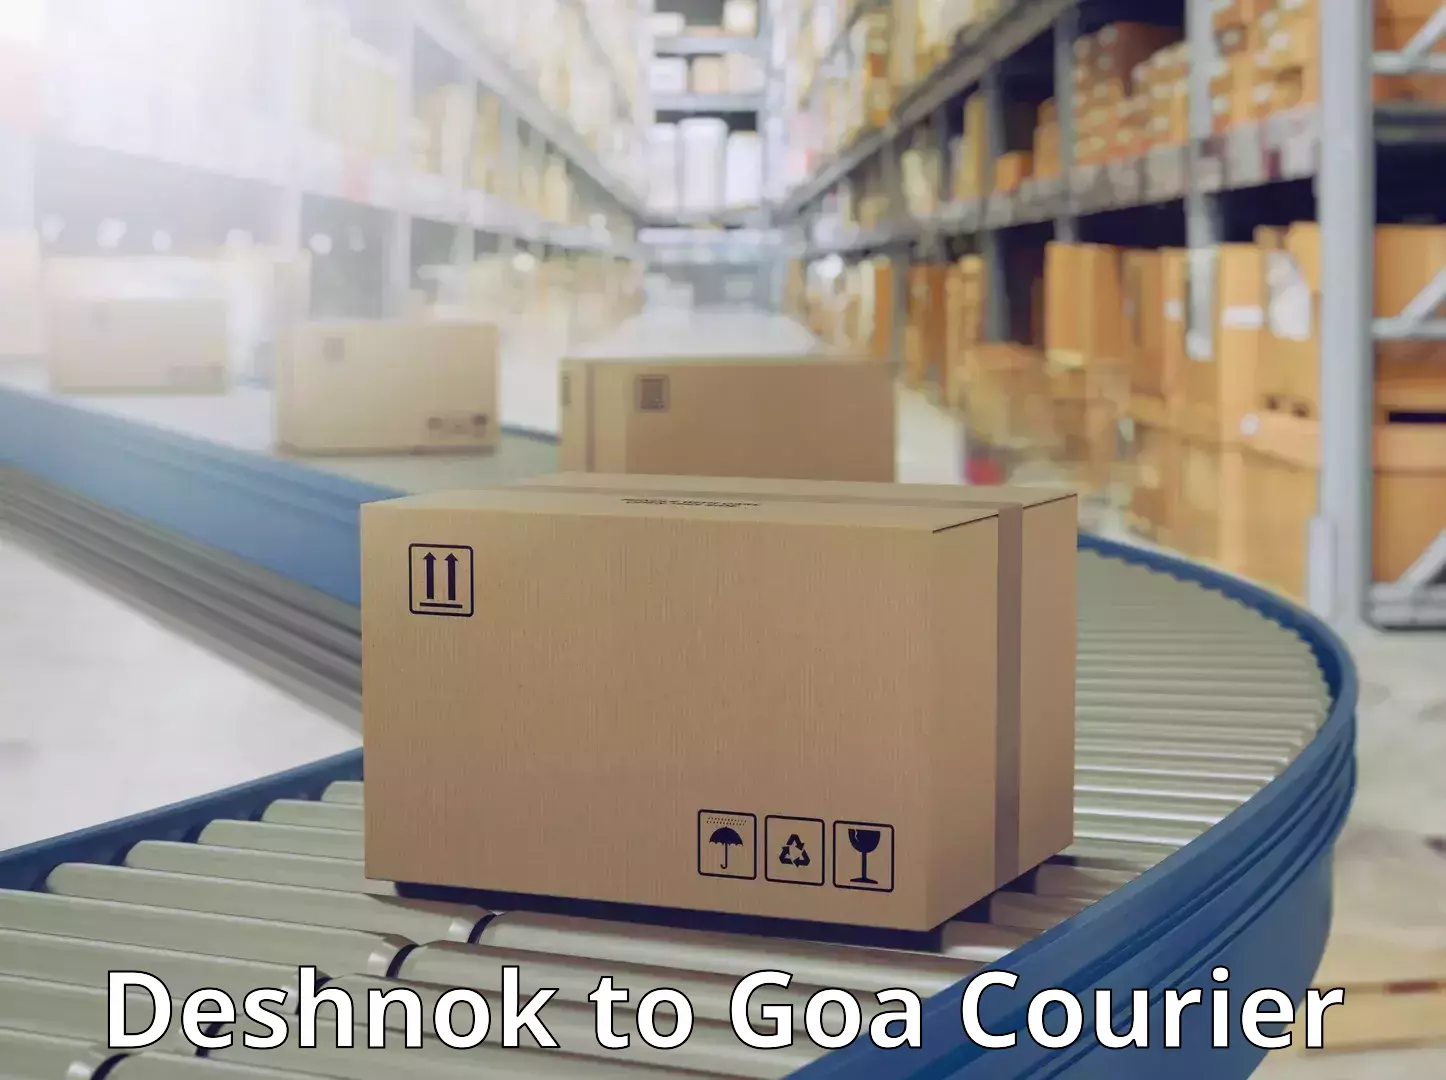 Quality courier services Deshnok to Goa